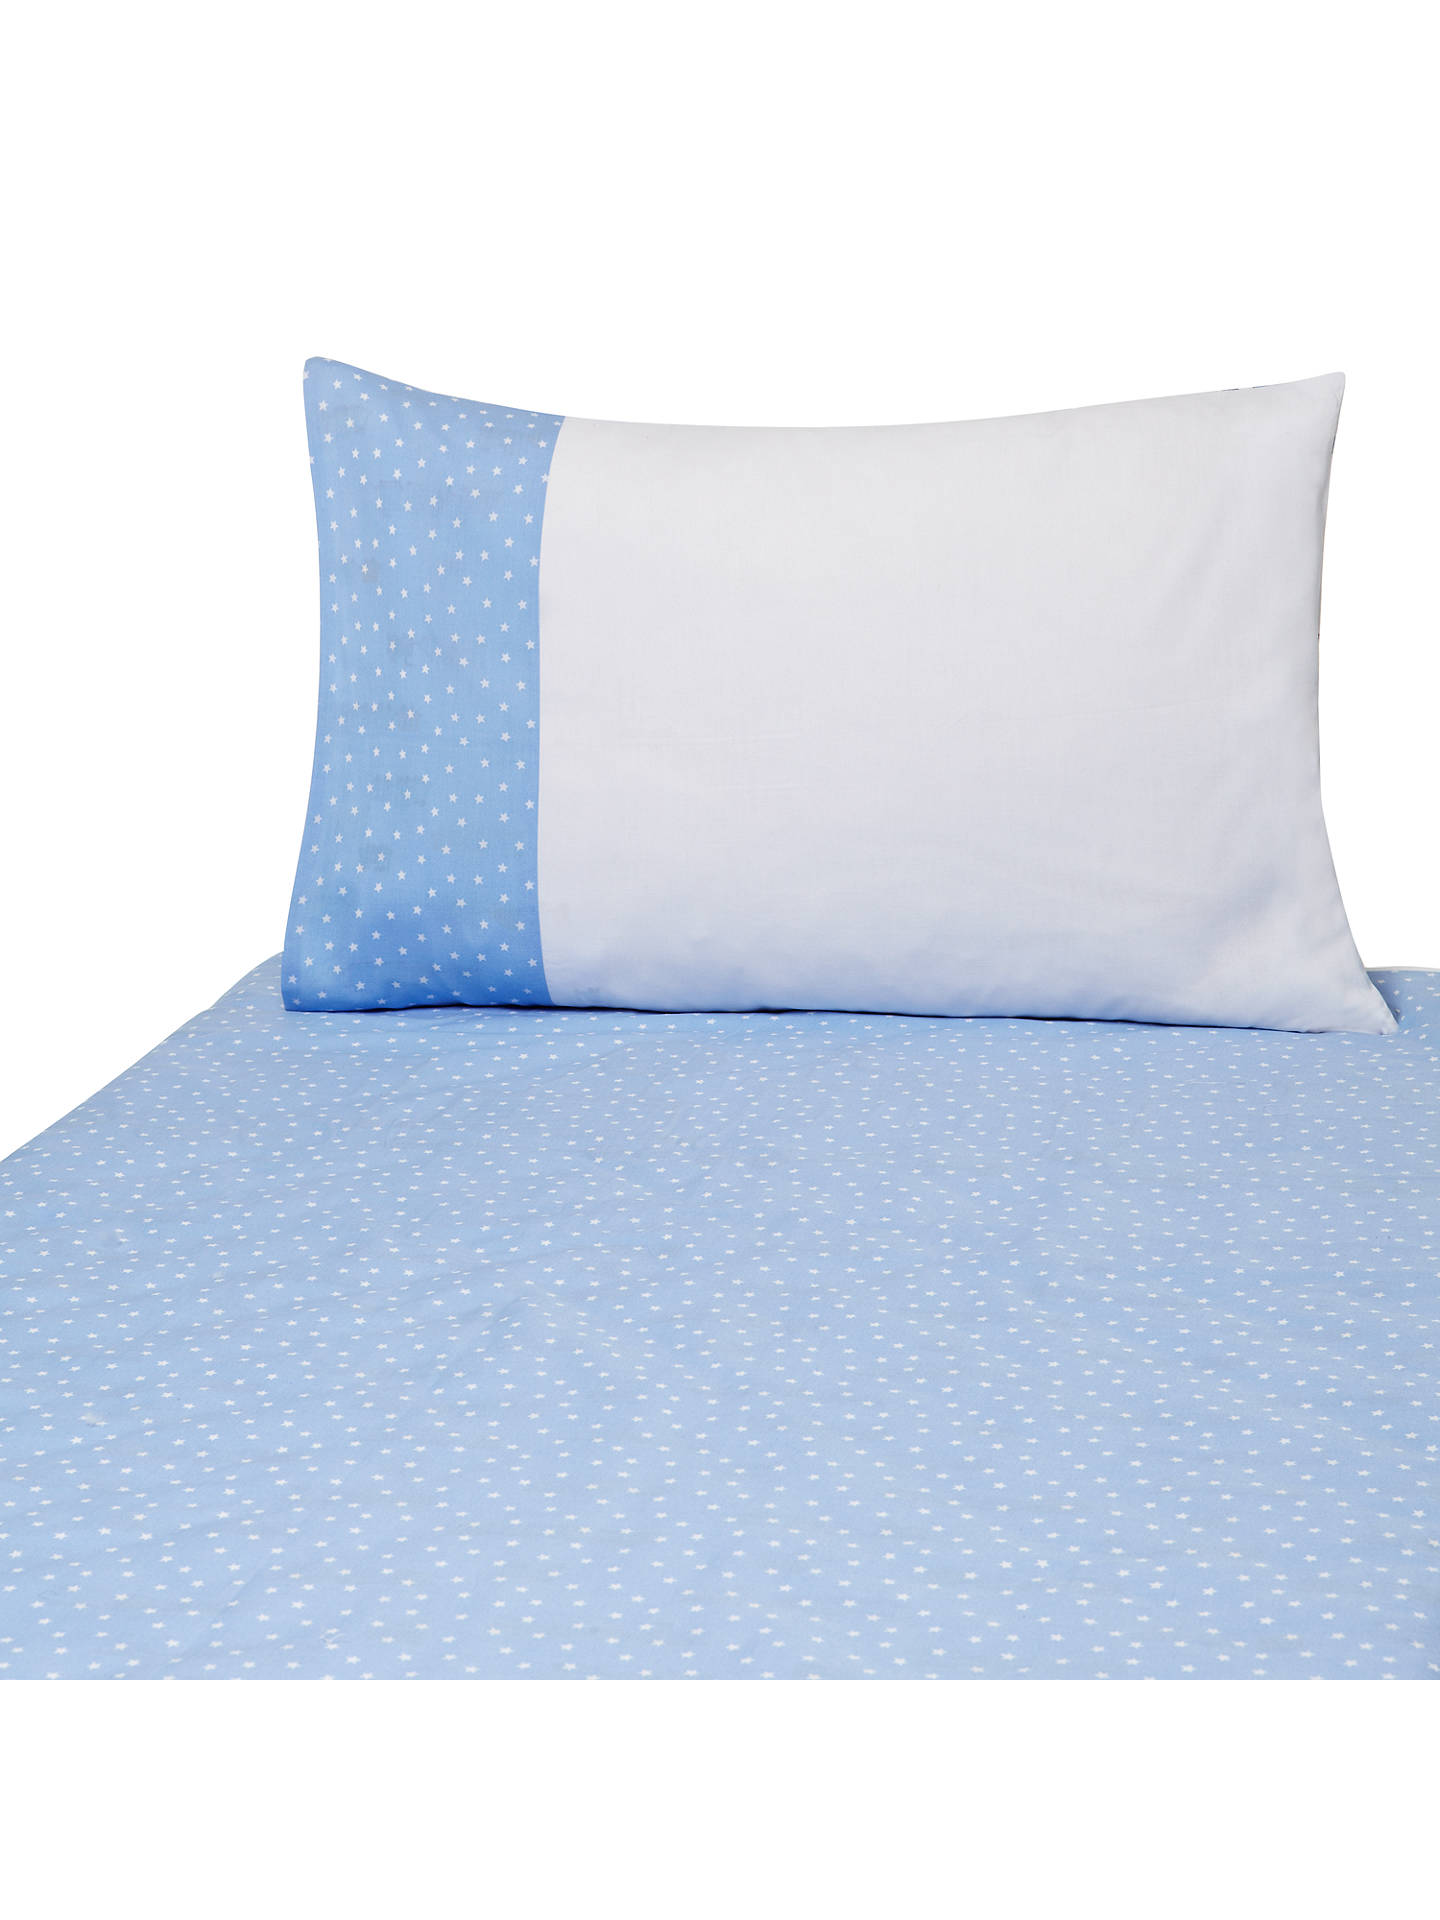 John Lewis Applique Train Cotbed Duvet Cover And Pillow Set Blue